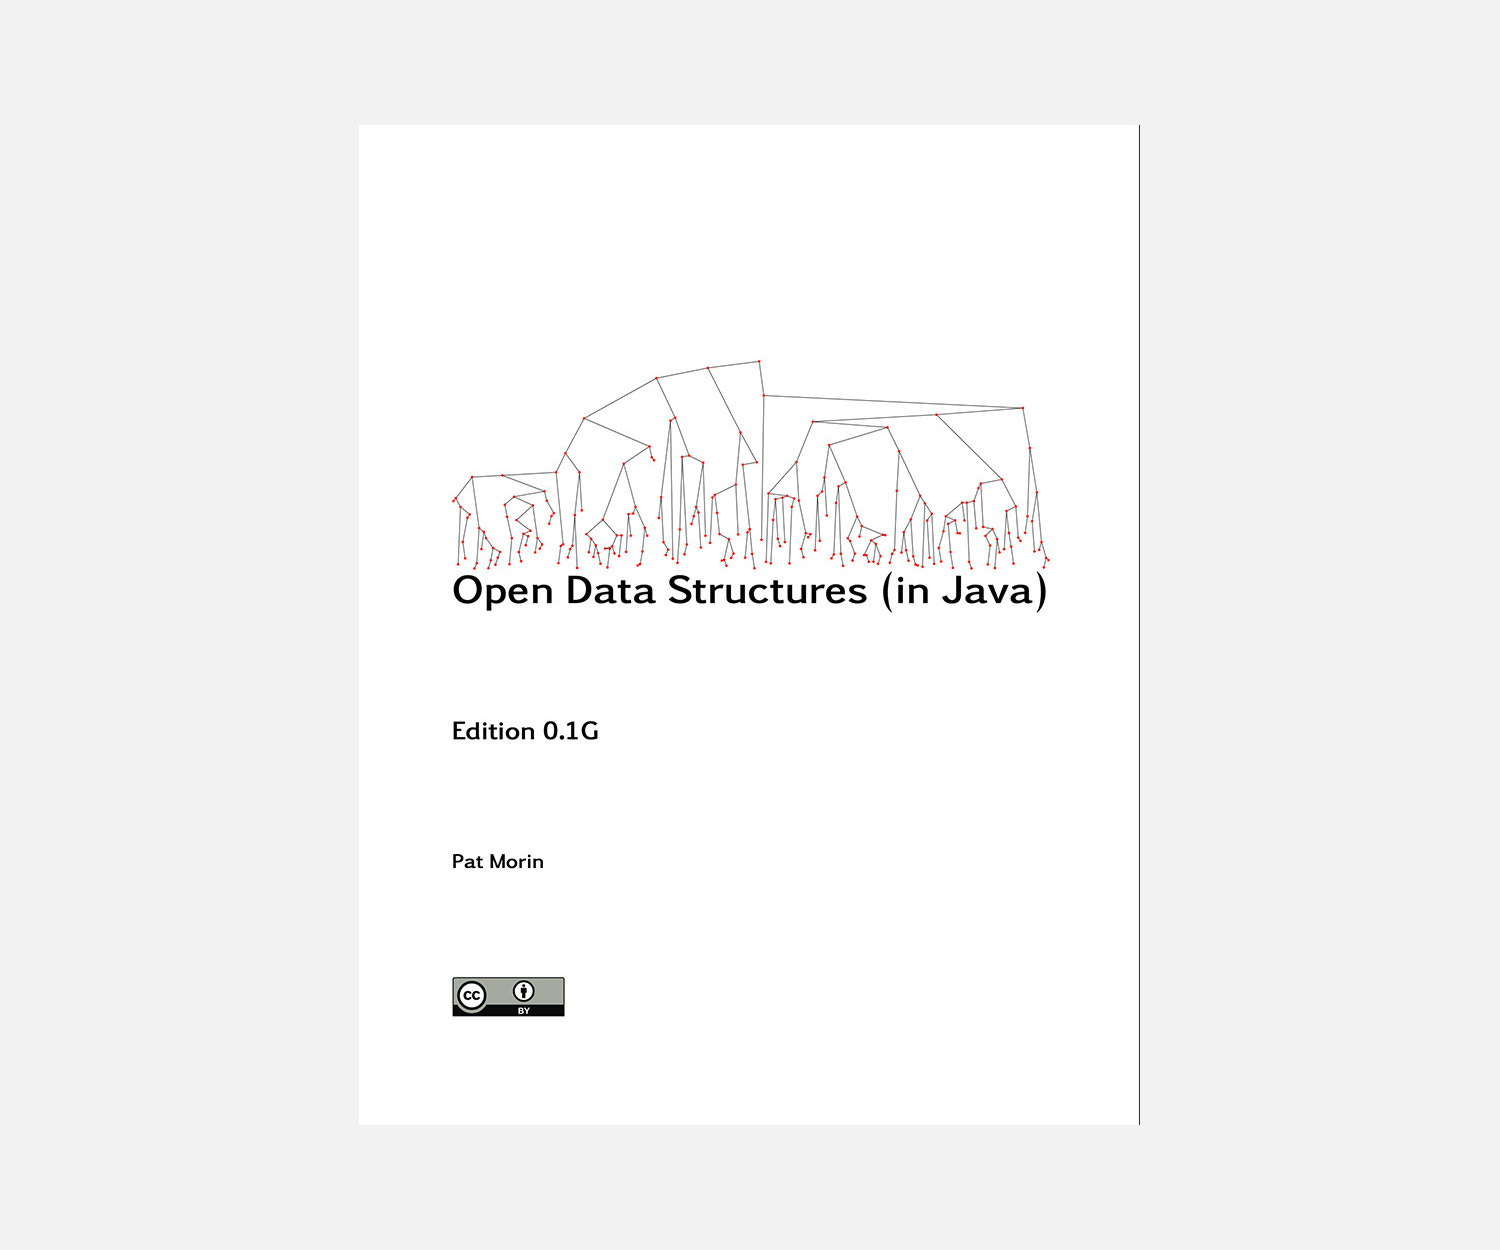 Estructuras de datos abiertas en Java